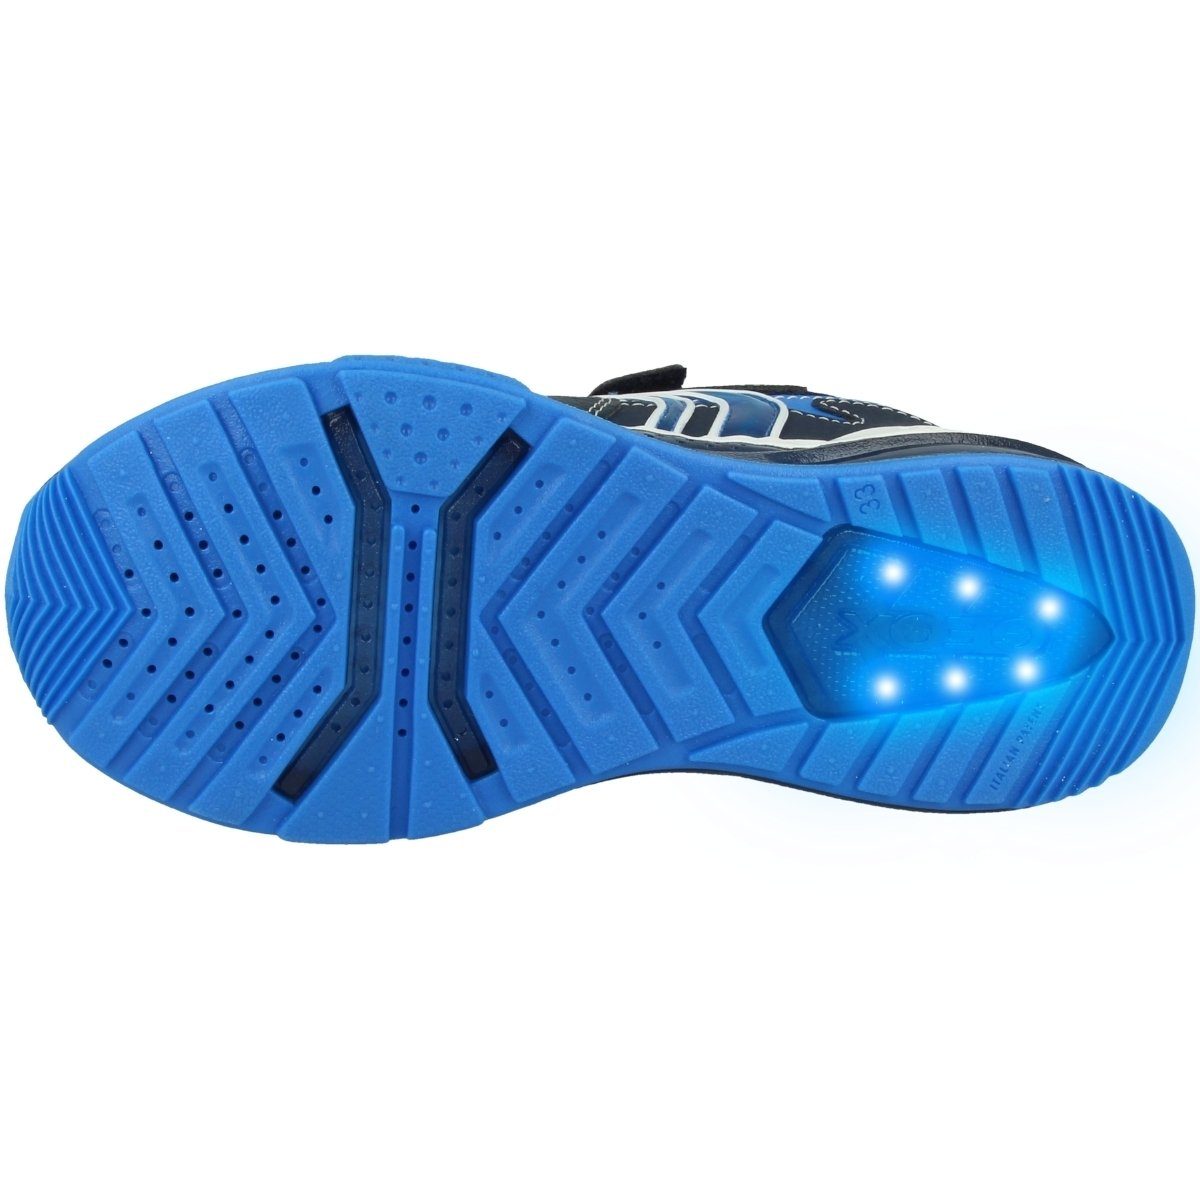 A Unisex Funktion Geox B. blau Kinder Sneaker Bayonyc LED J